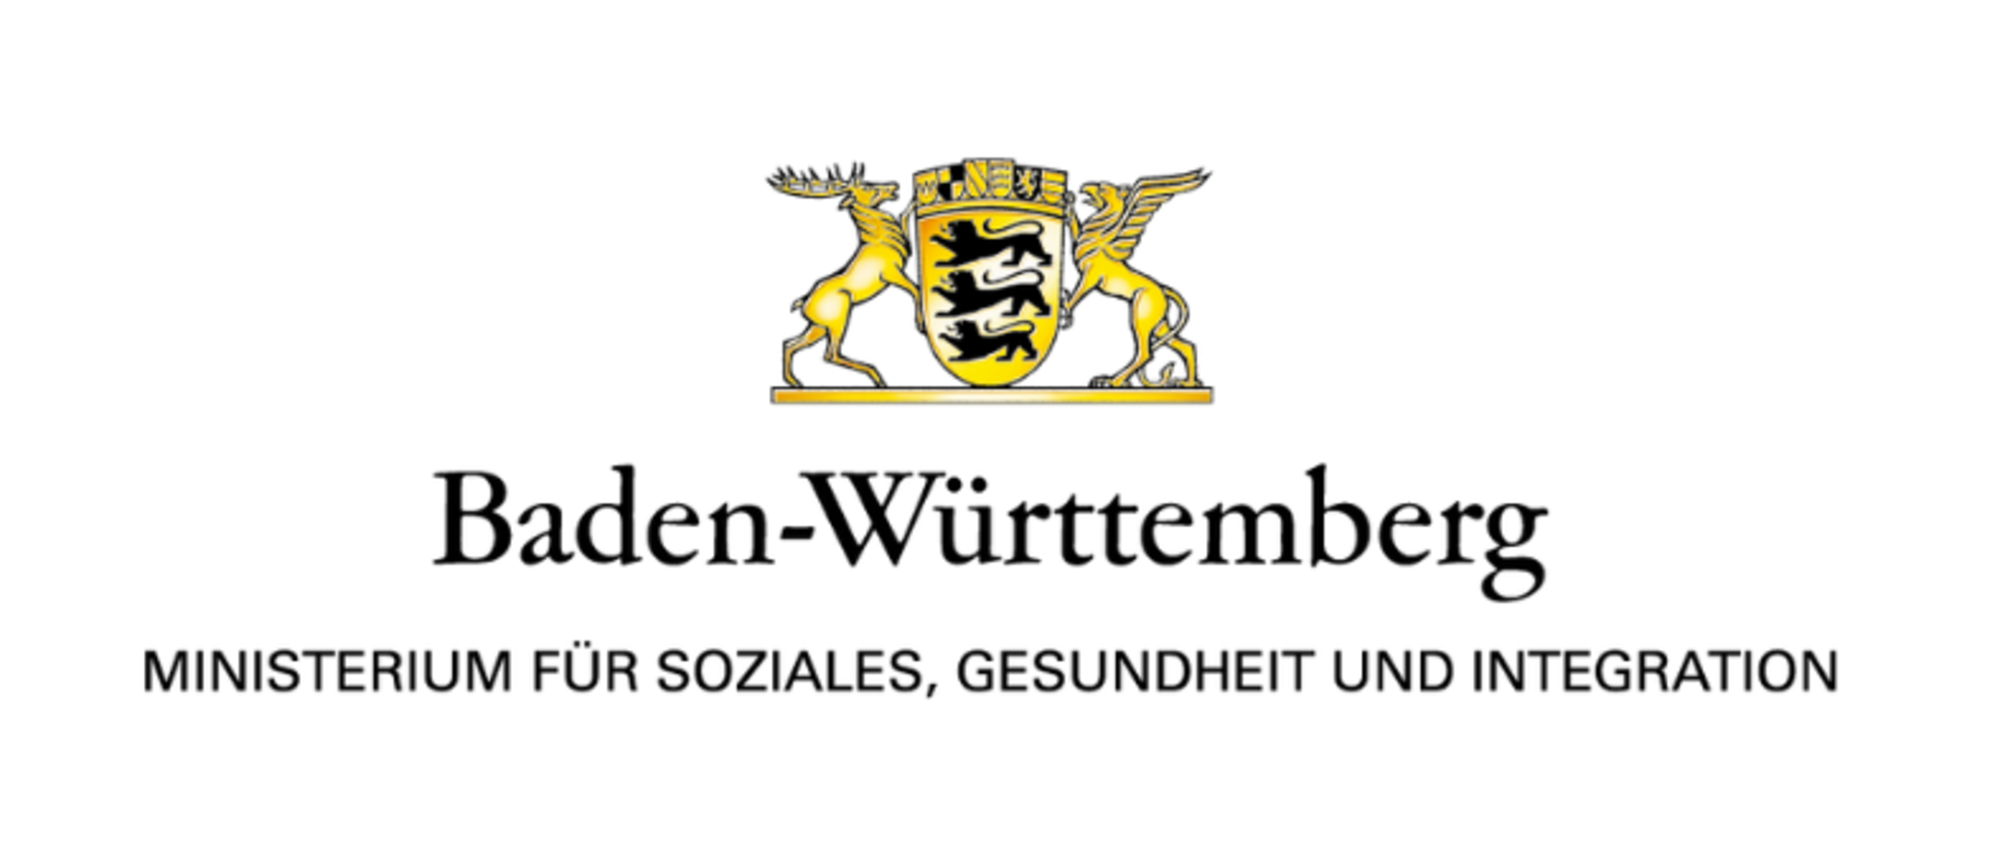 Das Logo des Sozialministeriums besteht aus dem Landeswappen sowie der Wortmarke "Ministeriums für Soziales, Gesundheit und Integration".  